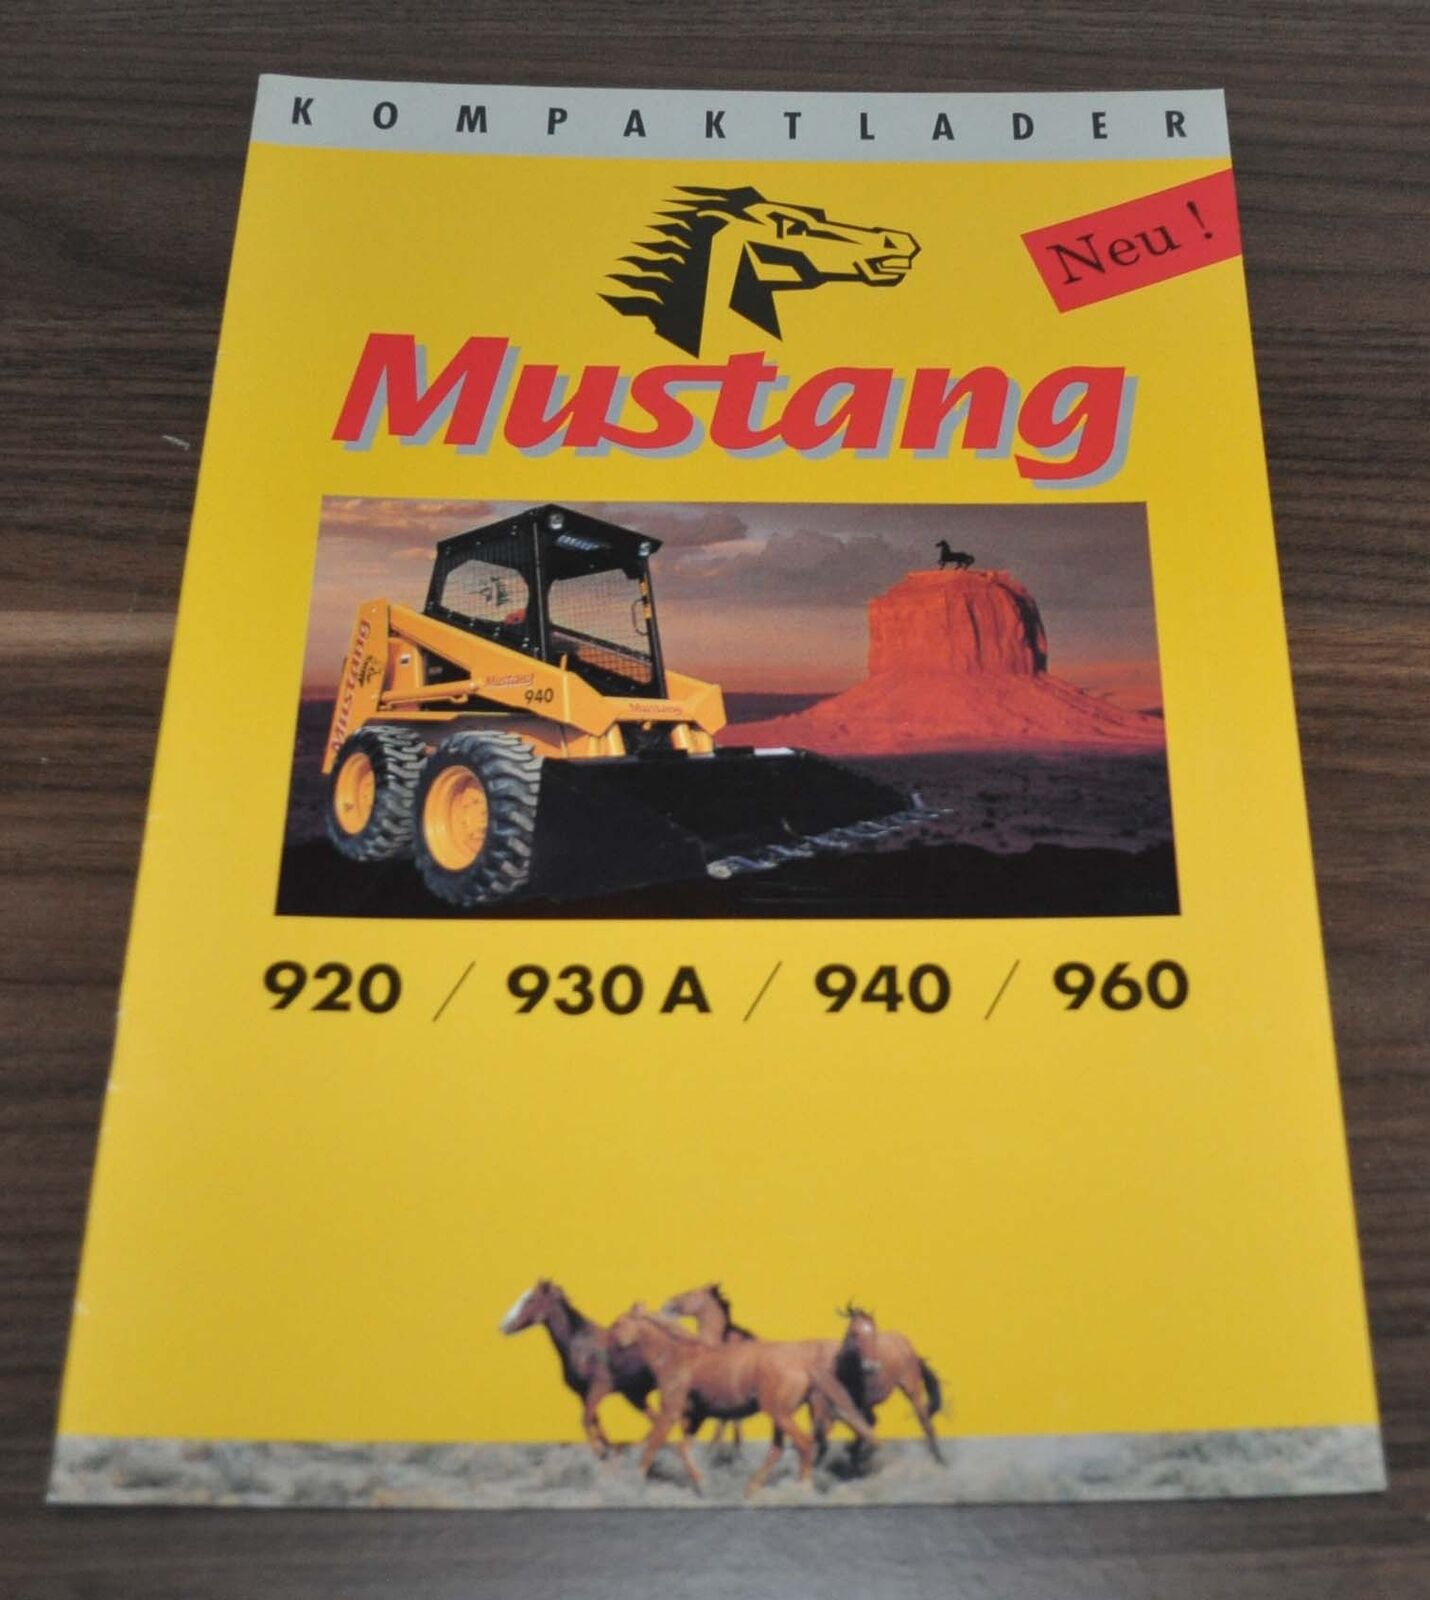 Mustang 920 930 940 960 Kompaktlader Compact Loader Brochure Prospekt D